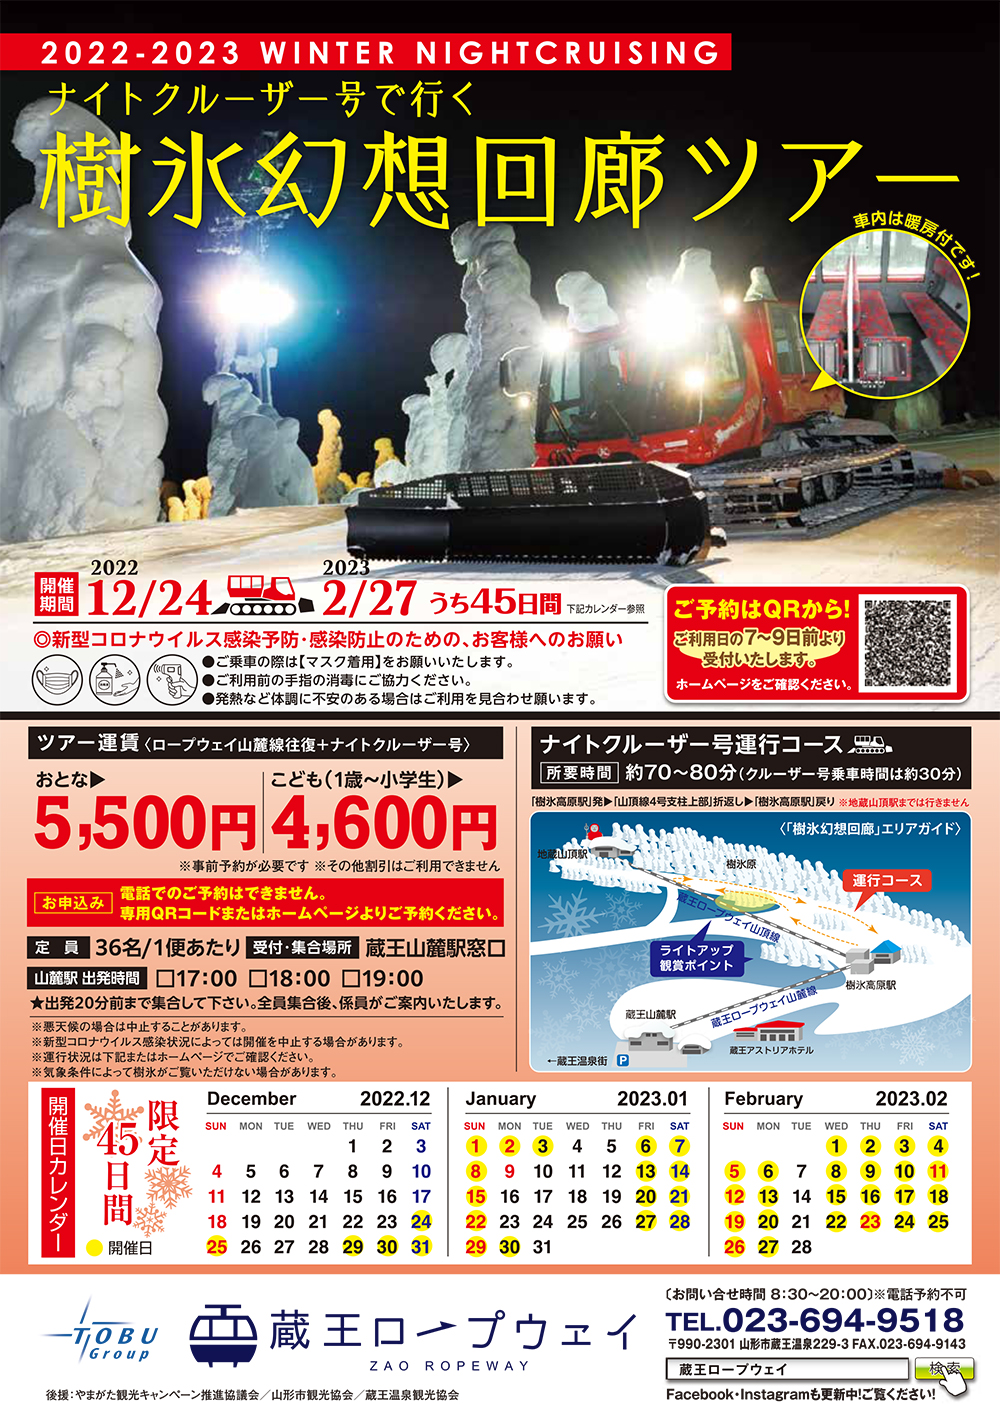 【山形イベント情報】12/24~2/27樹氷幻想回廊ツアーが開催されます。(蔵王ロープウェイ）